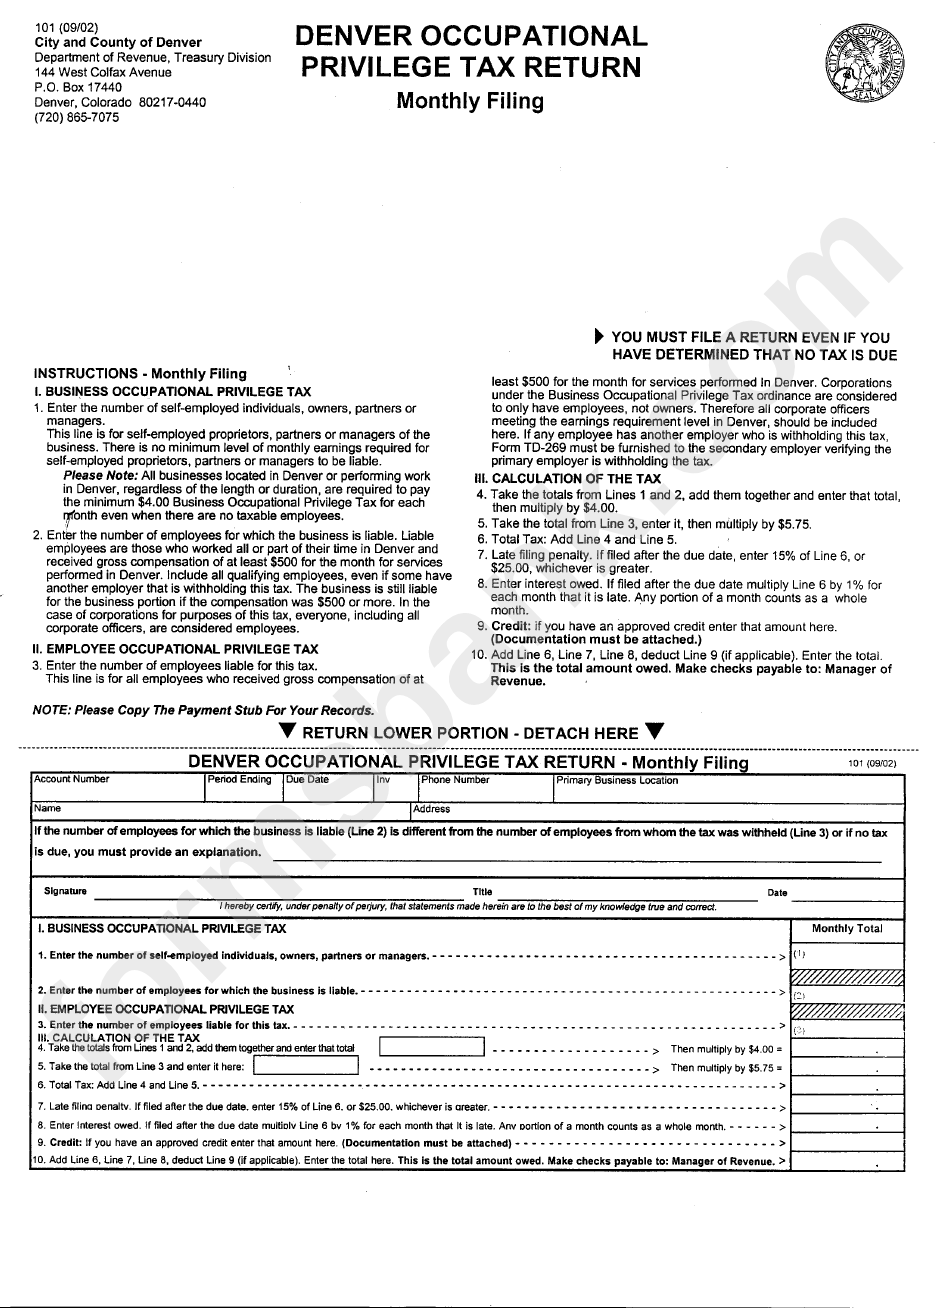 Form 101 - Denver Occupational Privilege Tax Return - Monthly Filing - 2002